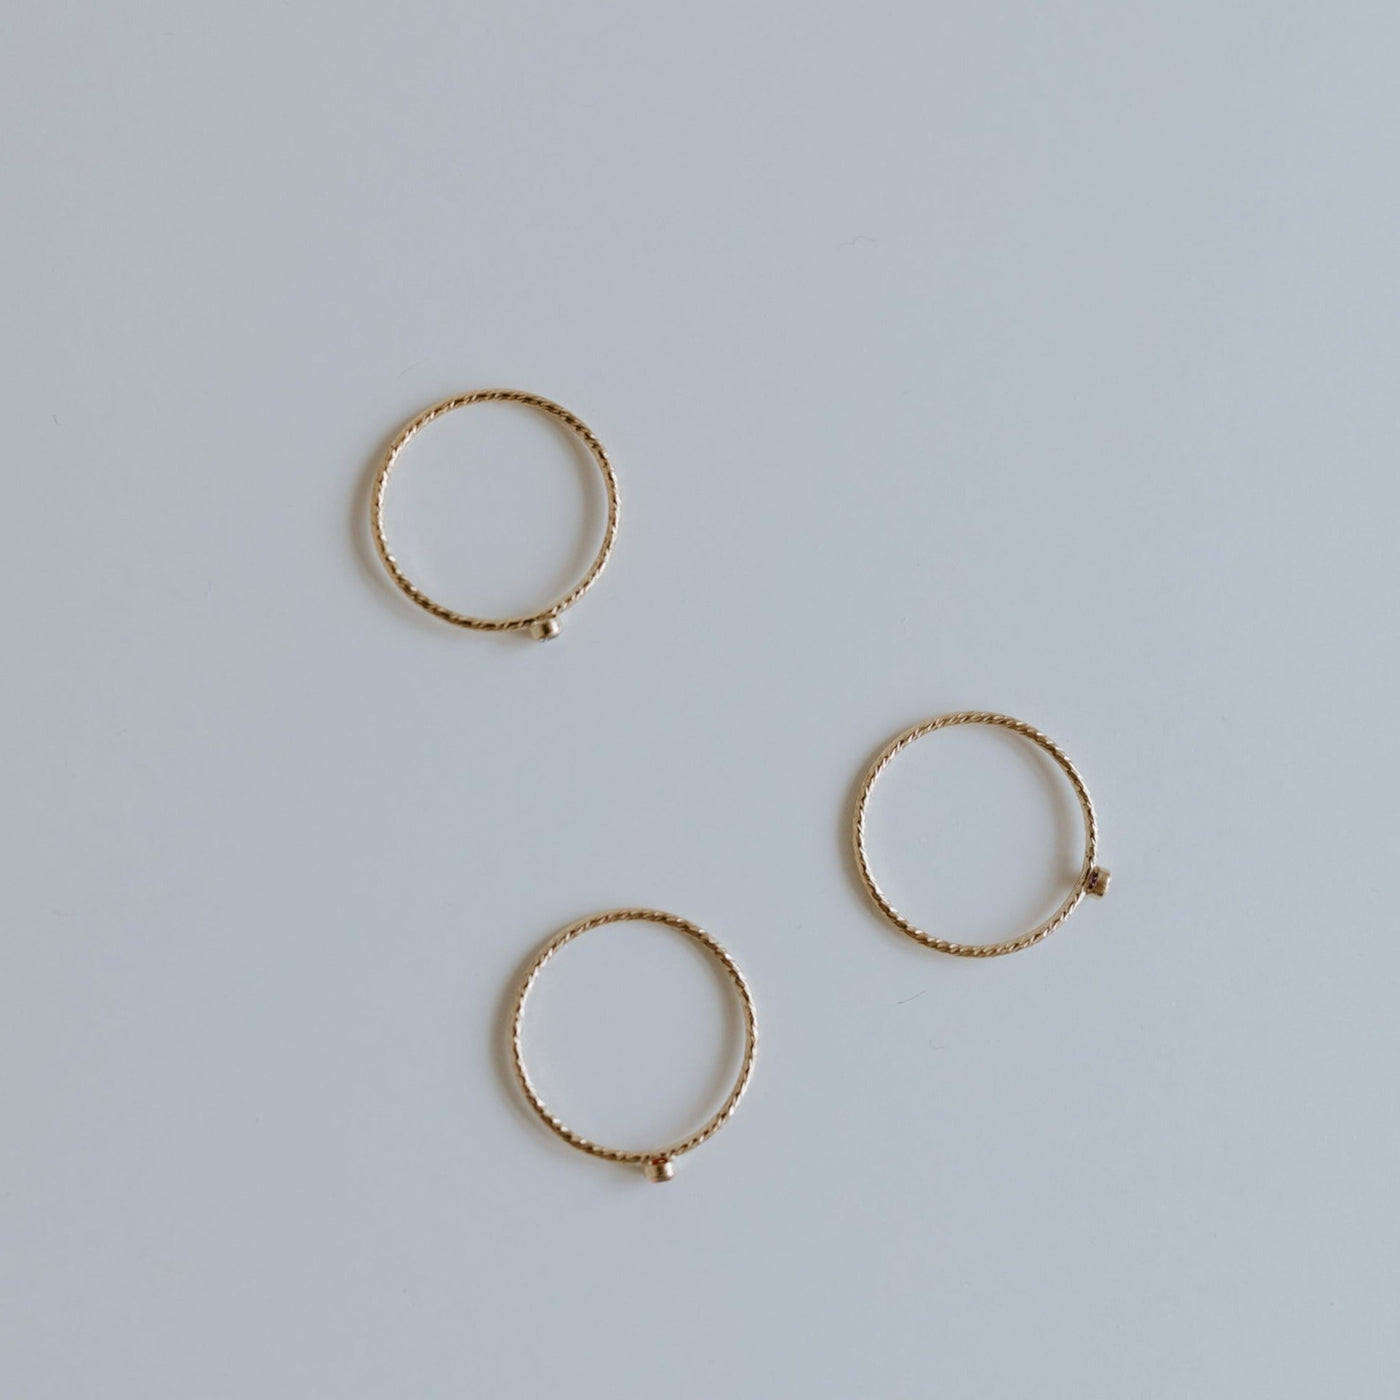 Topaz Twist Ring - Jillian Leigh Jewellery - Rings